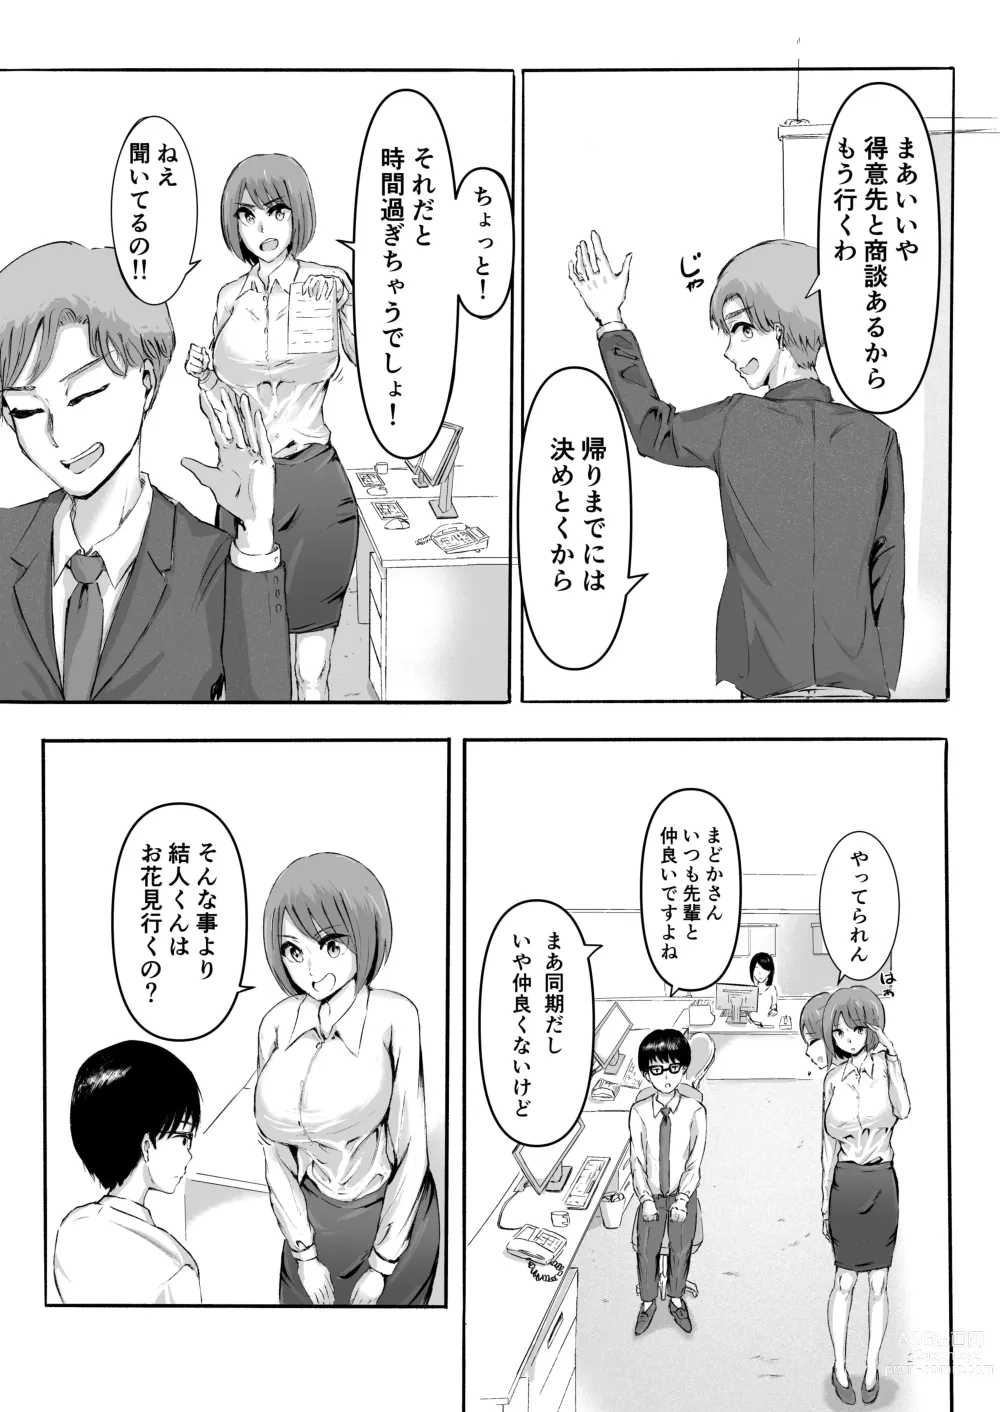 Page 7 of doujinshi Sakura no Hana Chiru Koro